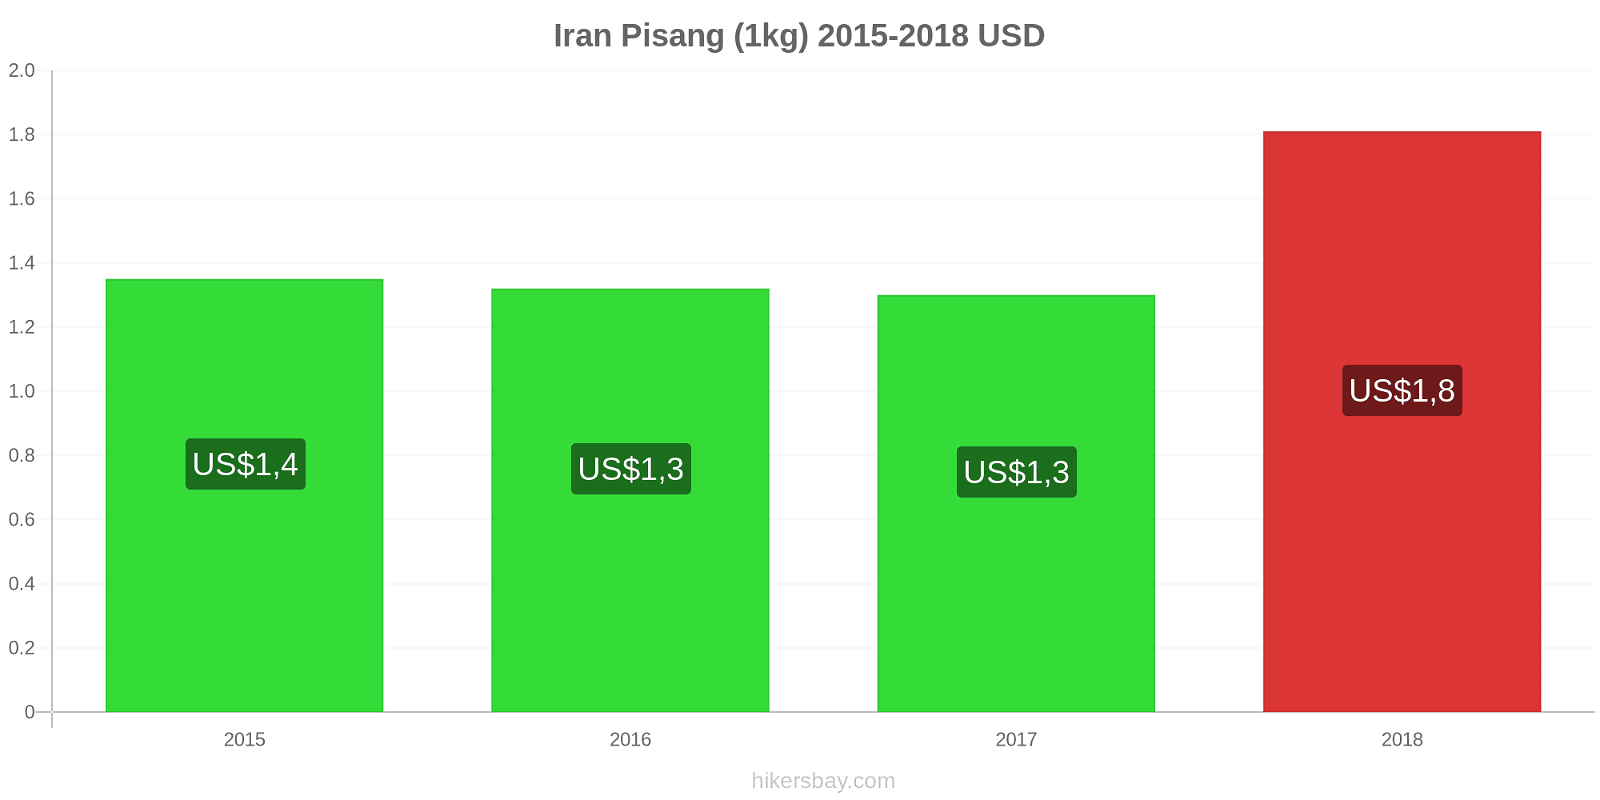 Iran perubahan harga Pisang (1kg) hikersbay.com